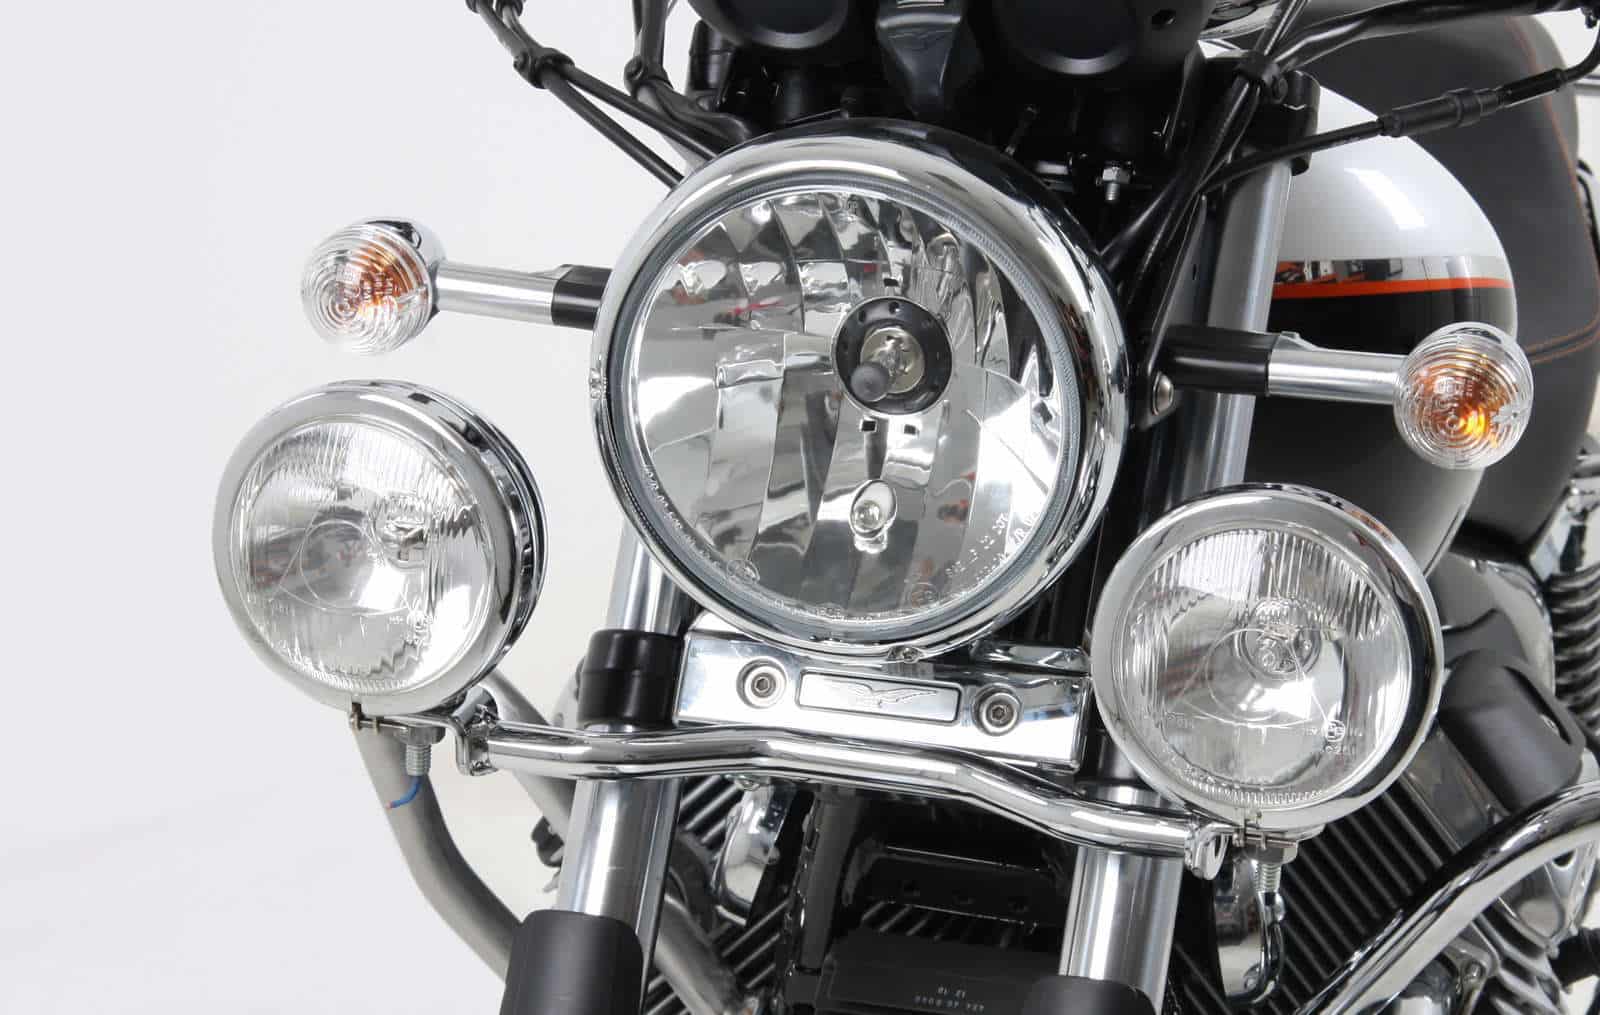 Twinlight Zusatzscheinwerferset (Fernlicht) inkl. Halter und Kabel chrom für Moto Guzzi Nevada 750 Anniversario (2010-2011)